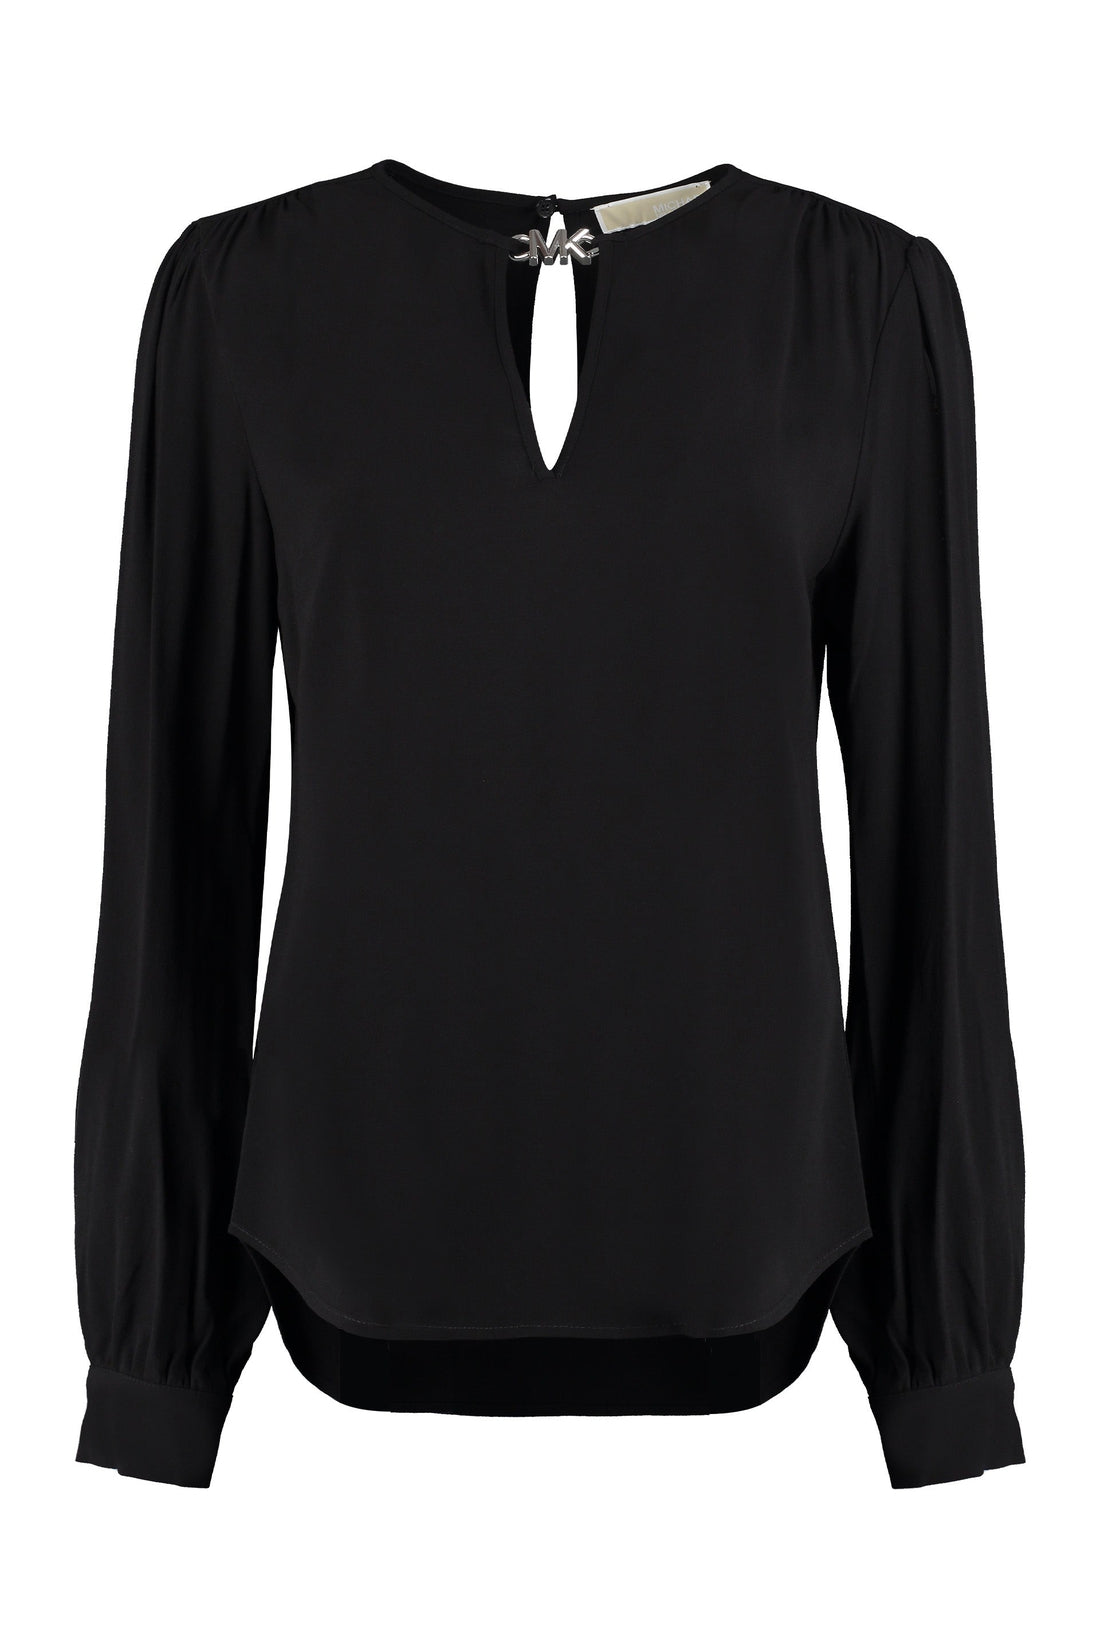 MICHAEL MICHAEL KORS-OUTLET-SALE-Logo detail crêpe blouse-ARCHIVIST